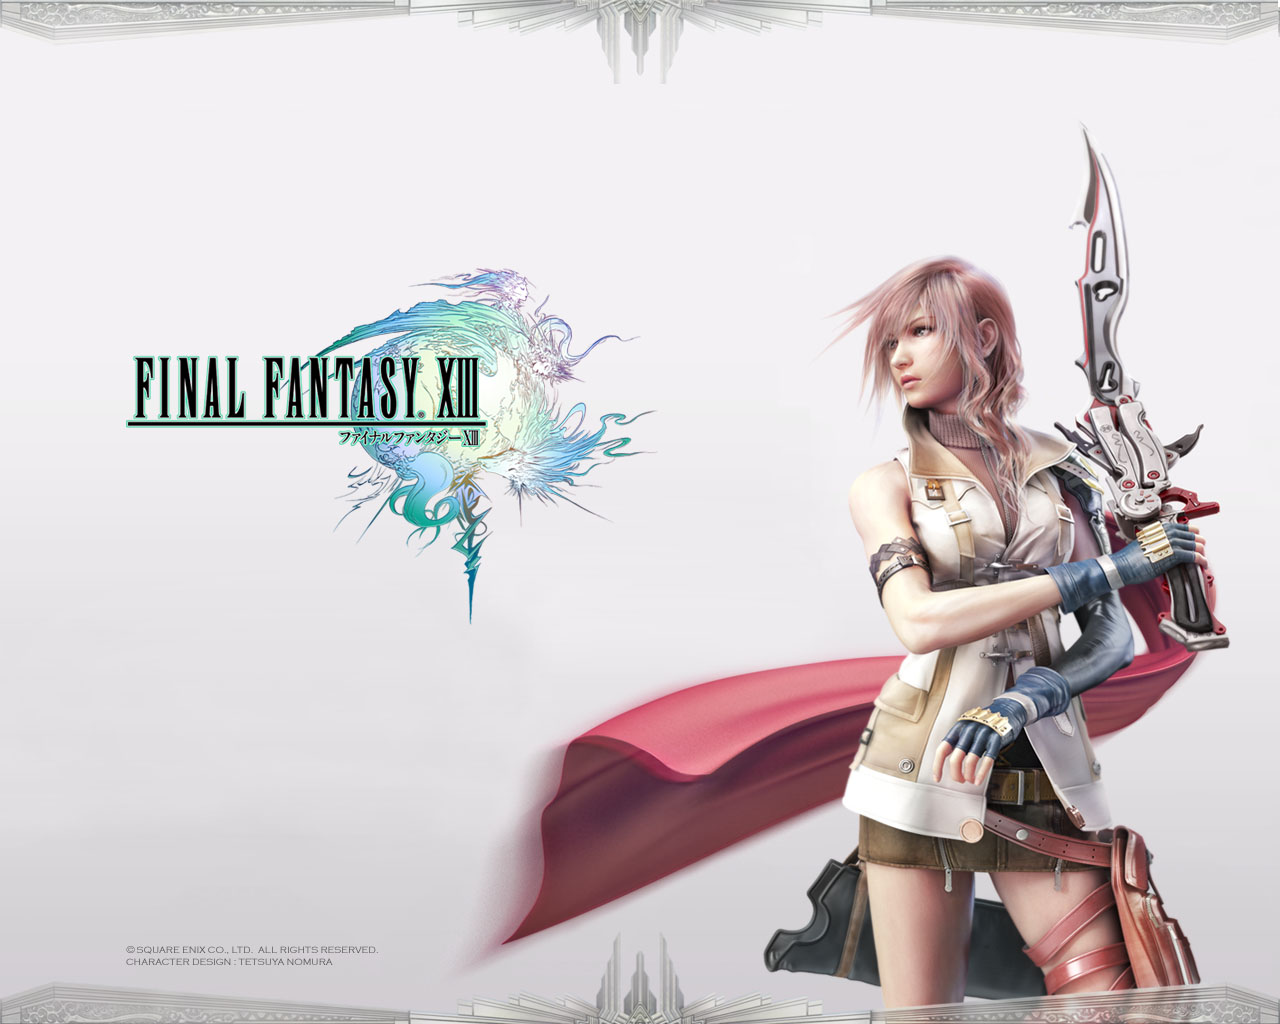 Fond d'ecran Final Fantasy XIII